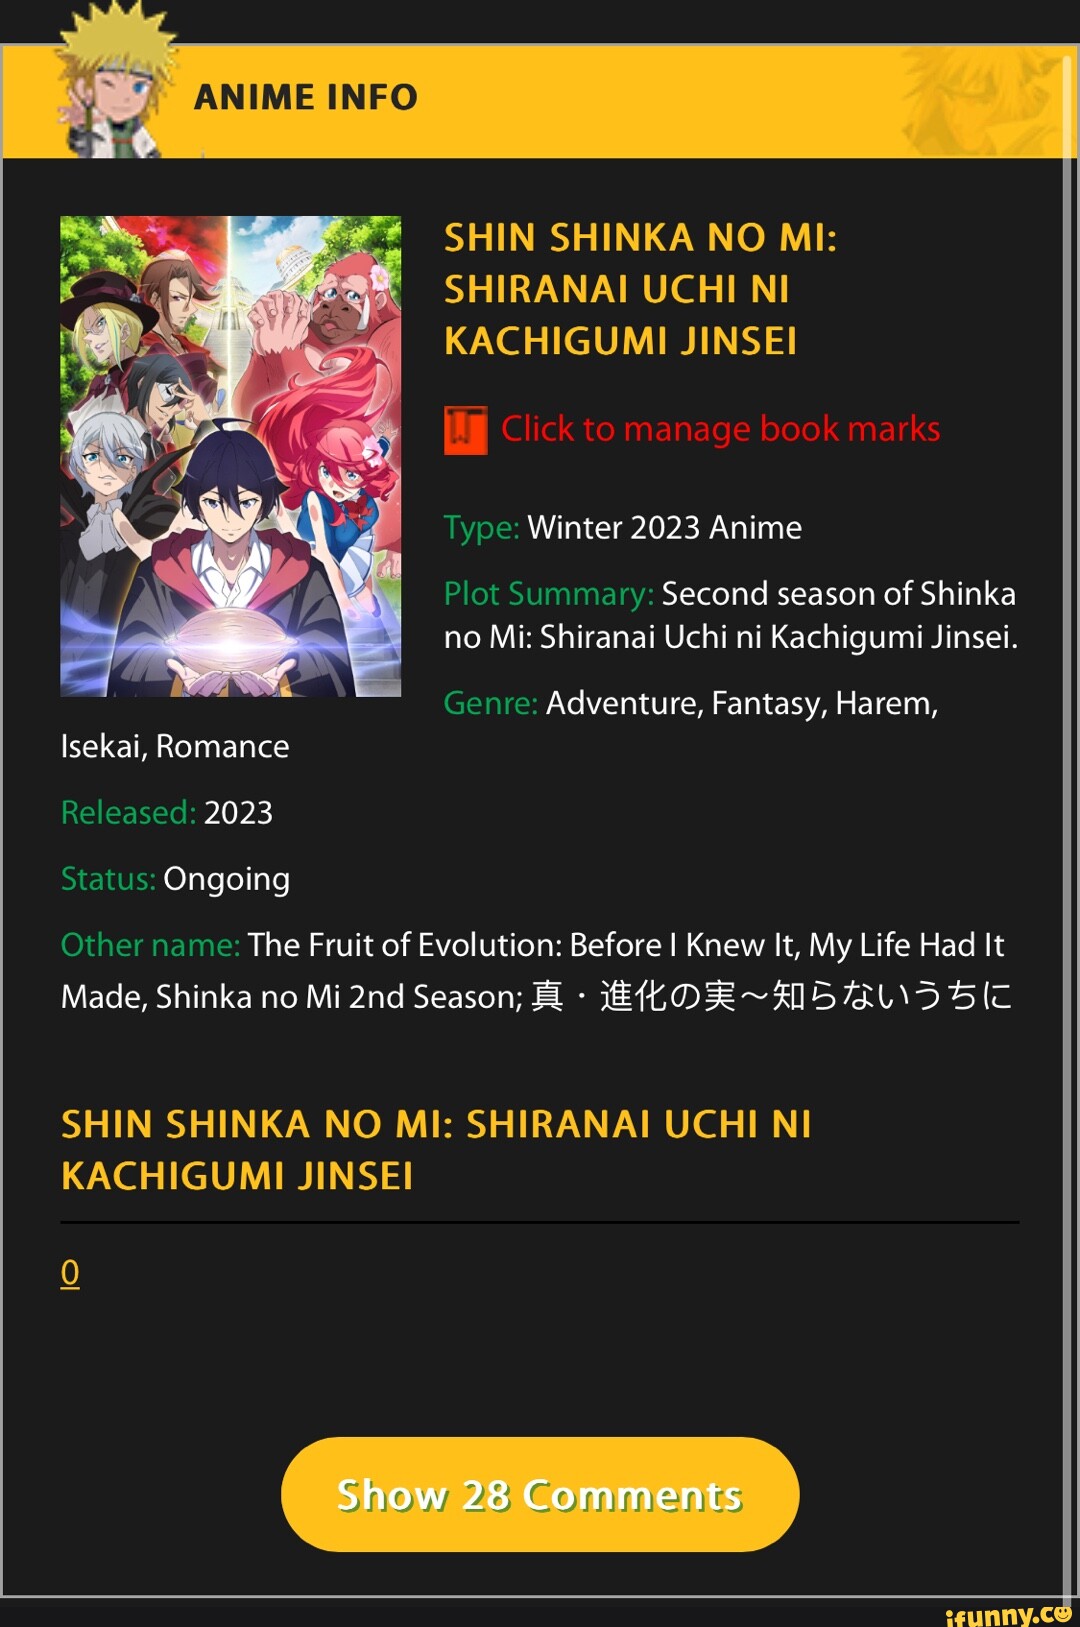 Shin Shinka no Mi: Shiranai Uchi ni Kachigumi Jinsei - The Fruit of  Evolution: Before I Knew It, My Life Had It Made Season 2, Shinka no Mi 2nd  Season